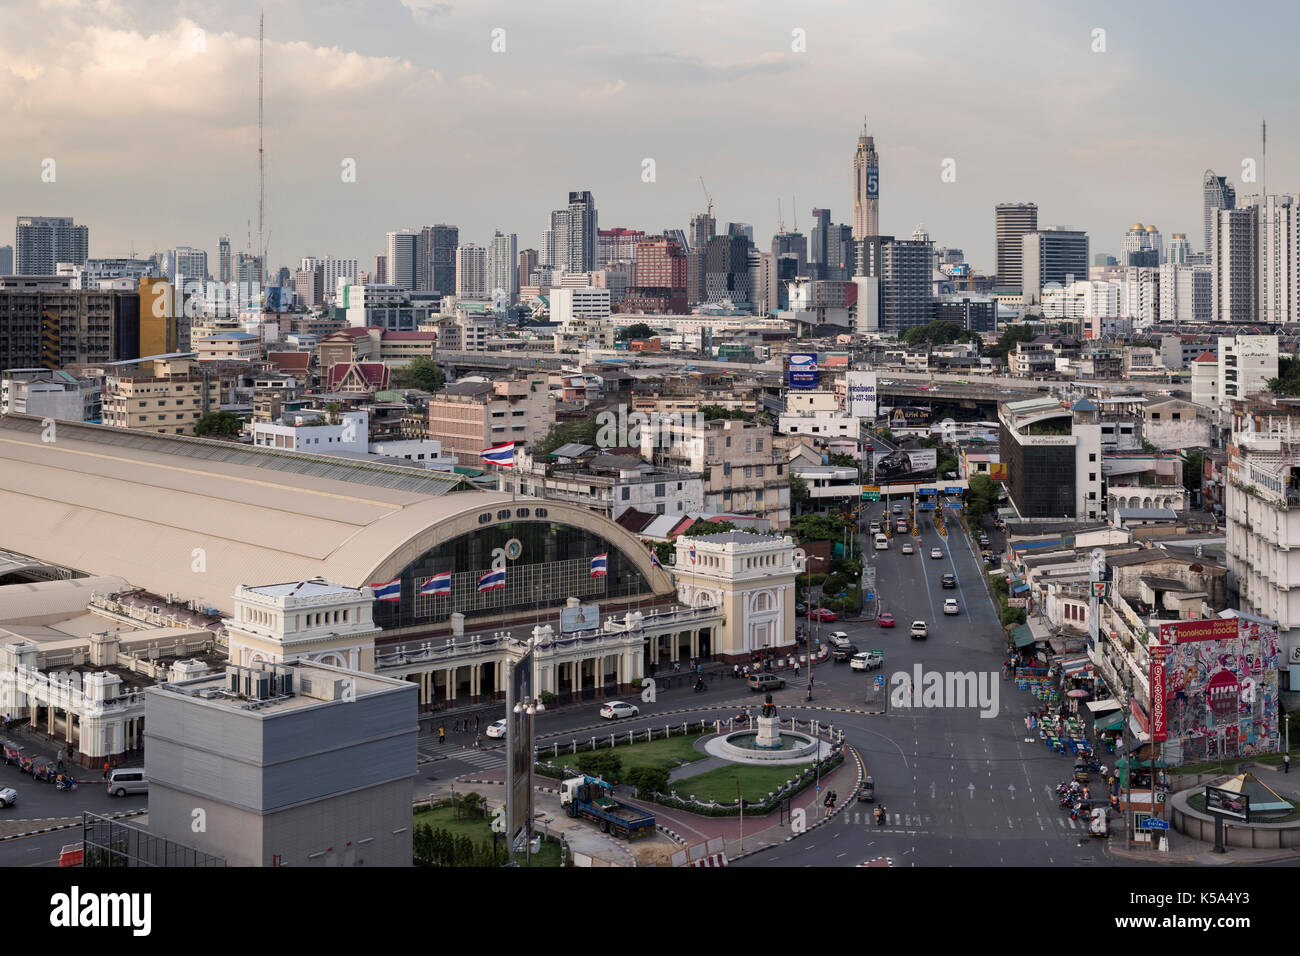 Bangkok, Thailand - September 4, 2017: Bangkok Railway Station or Hua Lamphong Station, the central railway station of Thailand Stock Photo